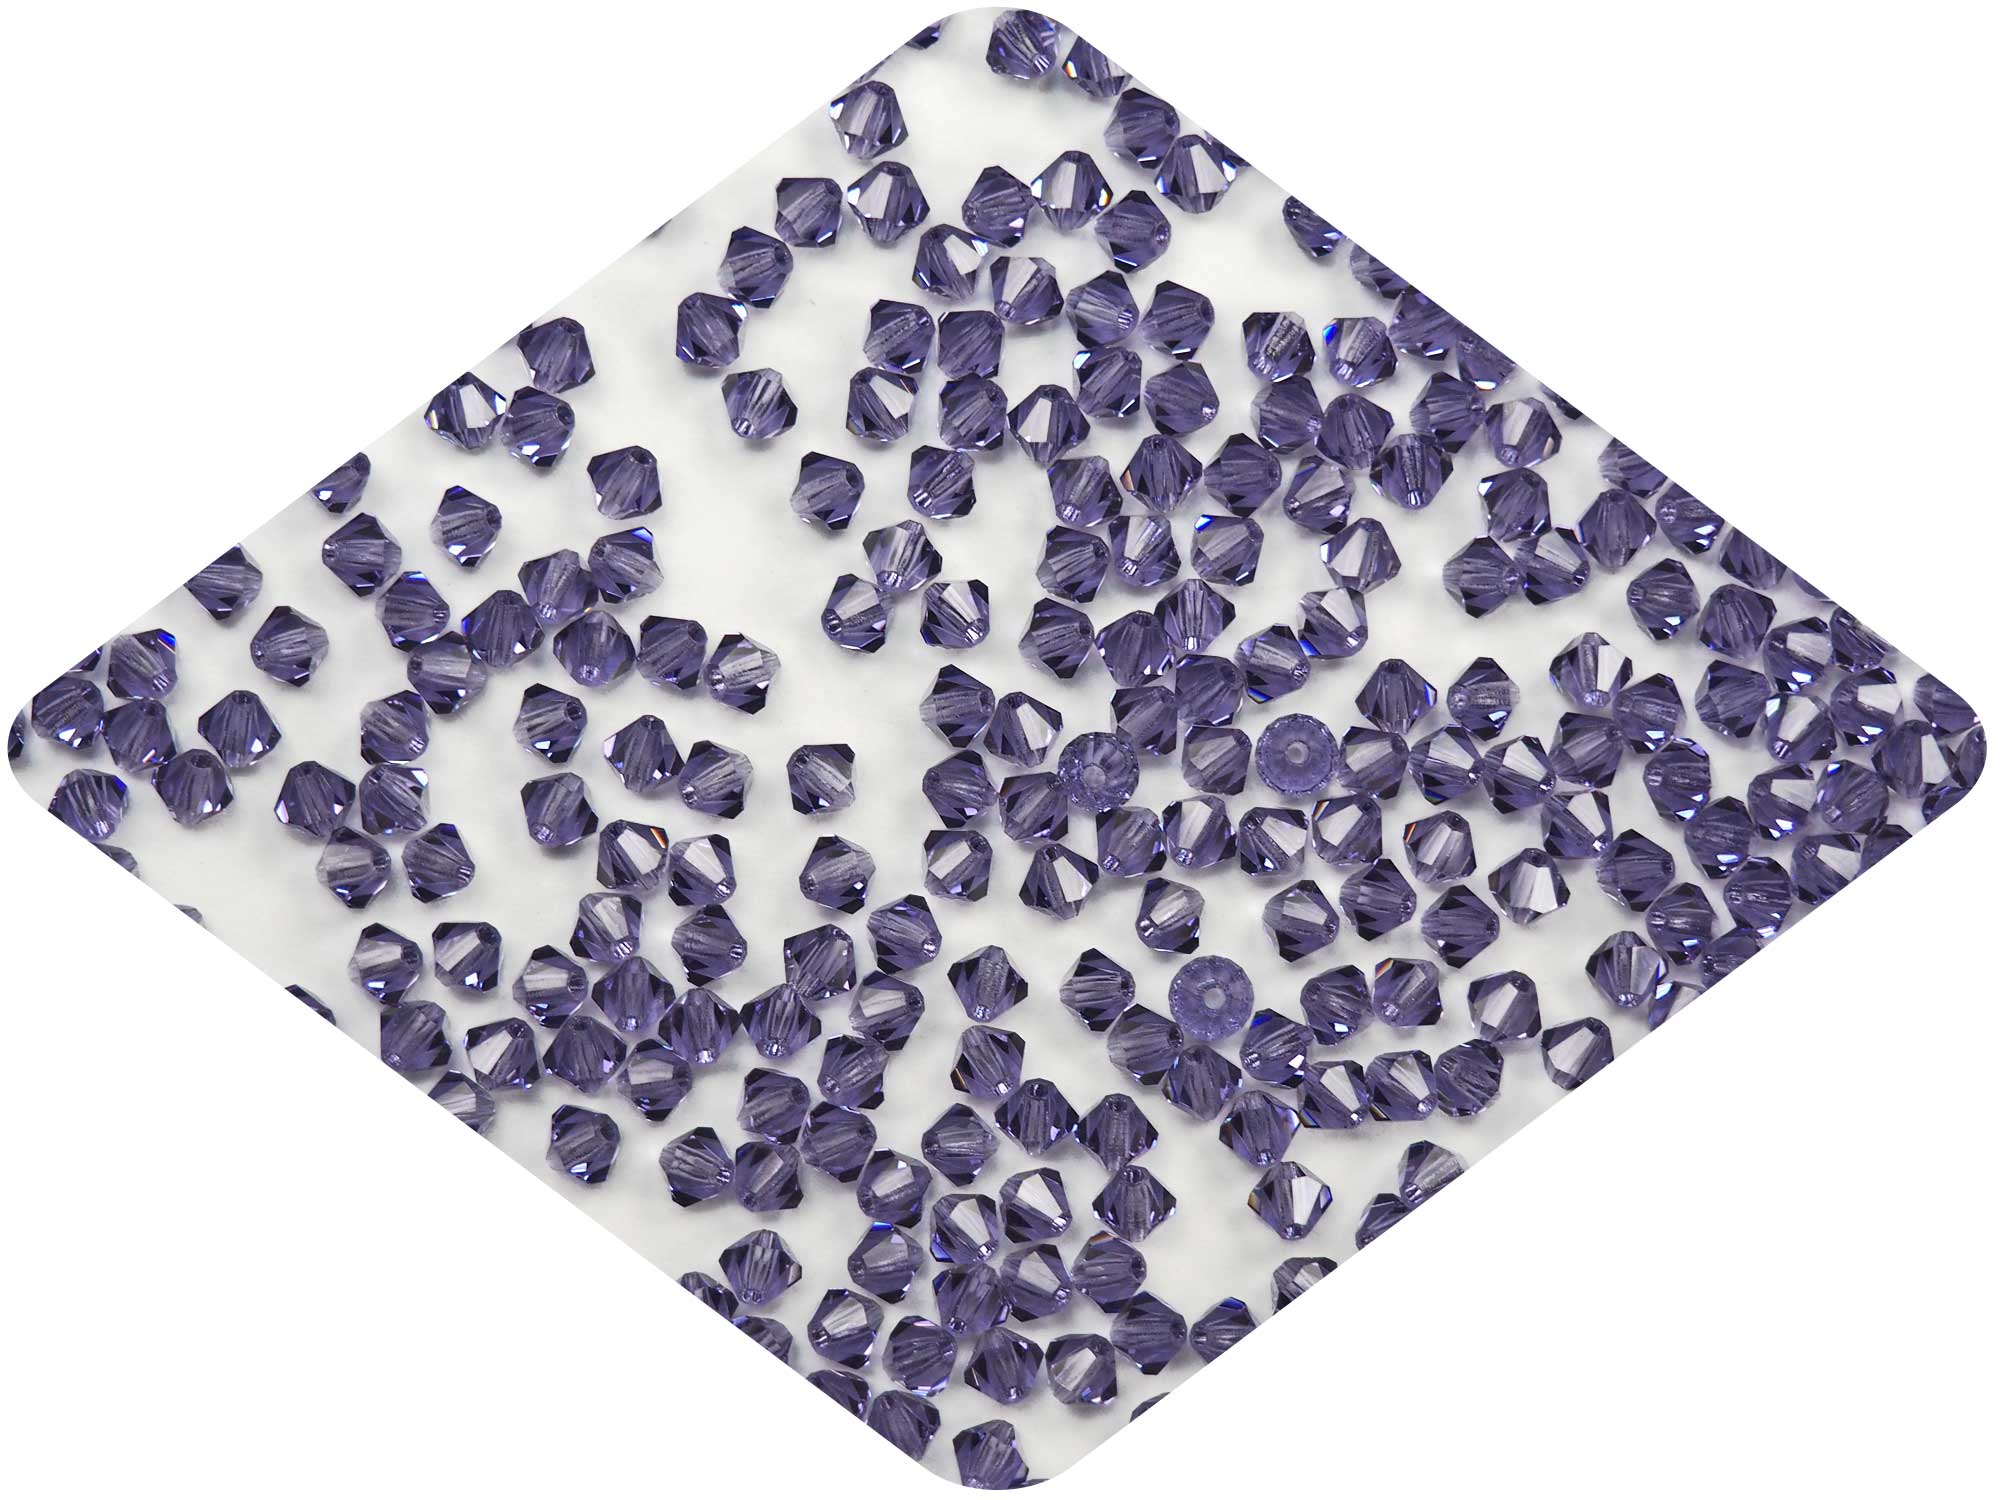 Tanzanite (Preciosa color), Czech Glass Beads, Machine Cut Bicones (MC Rondell, Diamond Shape), purple crystals